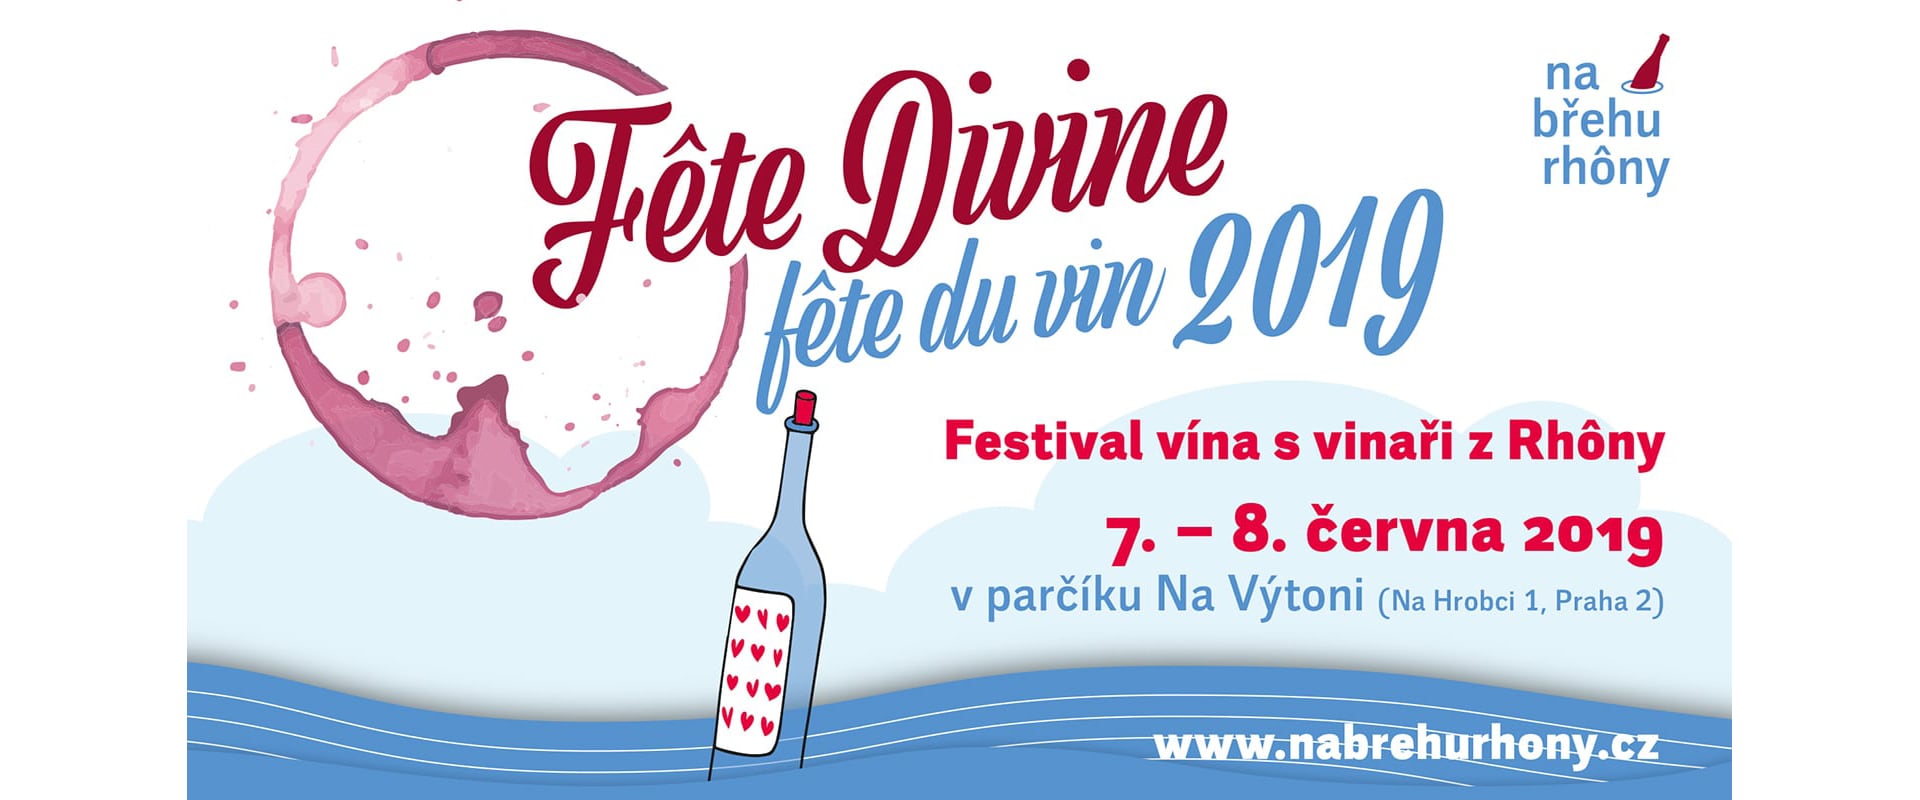 festival vína s vinaři z Rhôny 2019